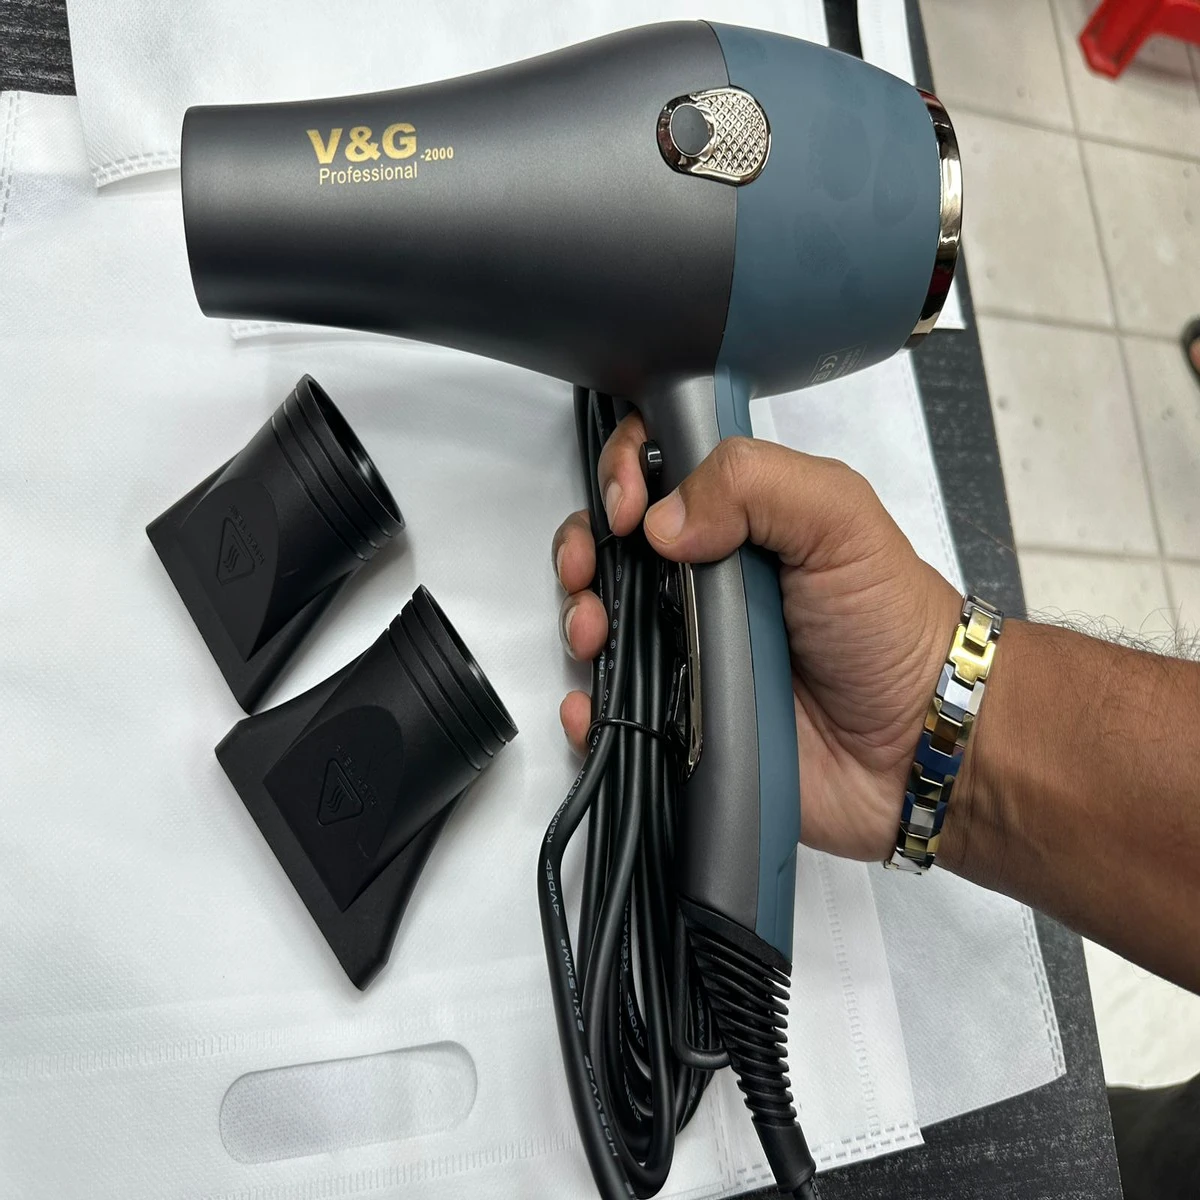 V&G-2000 Professional Hair Dryer